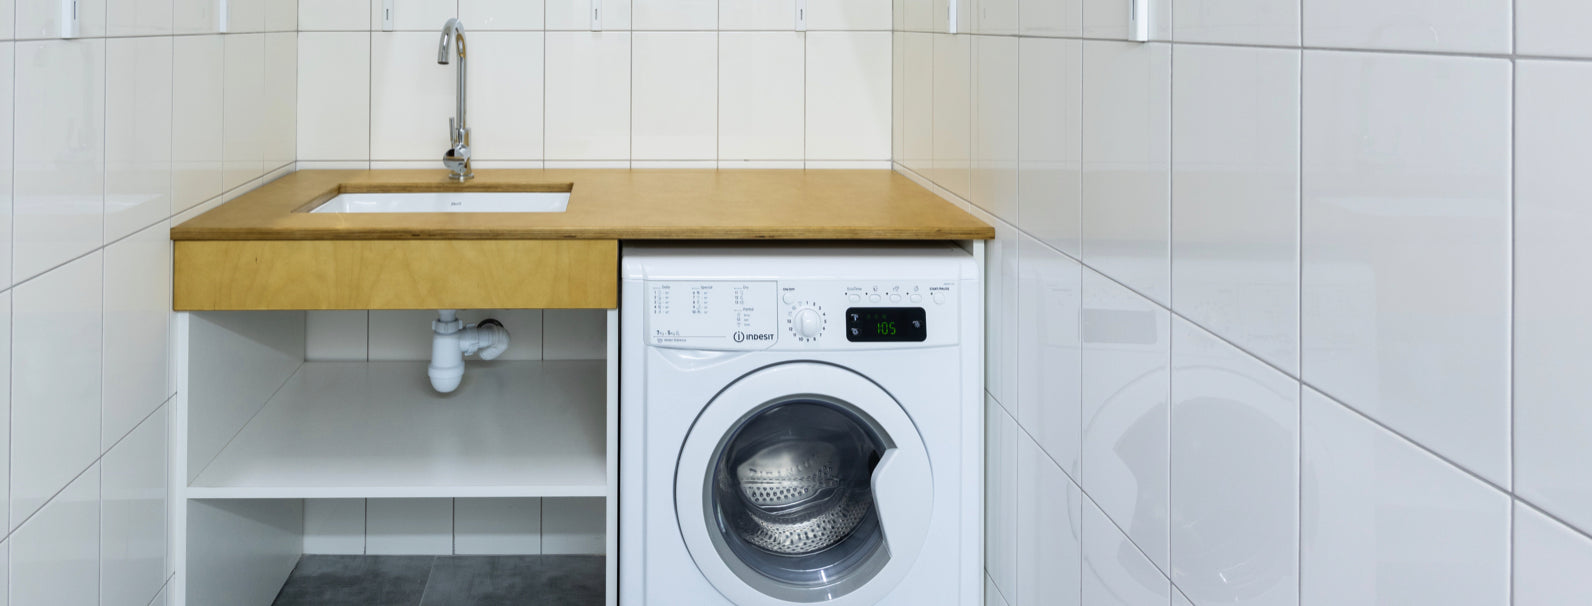 limpiar tu lavadora con productos naturales-Home Healthy Home